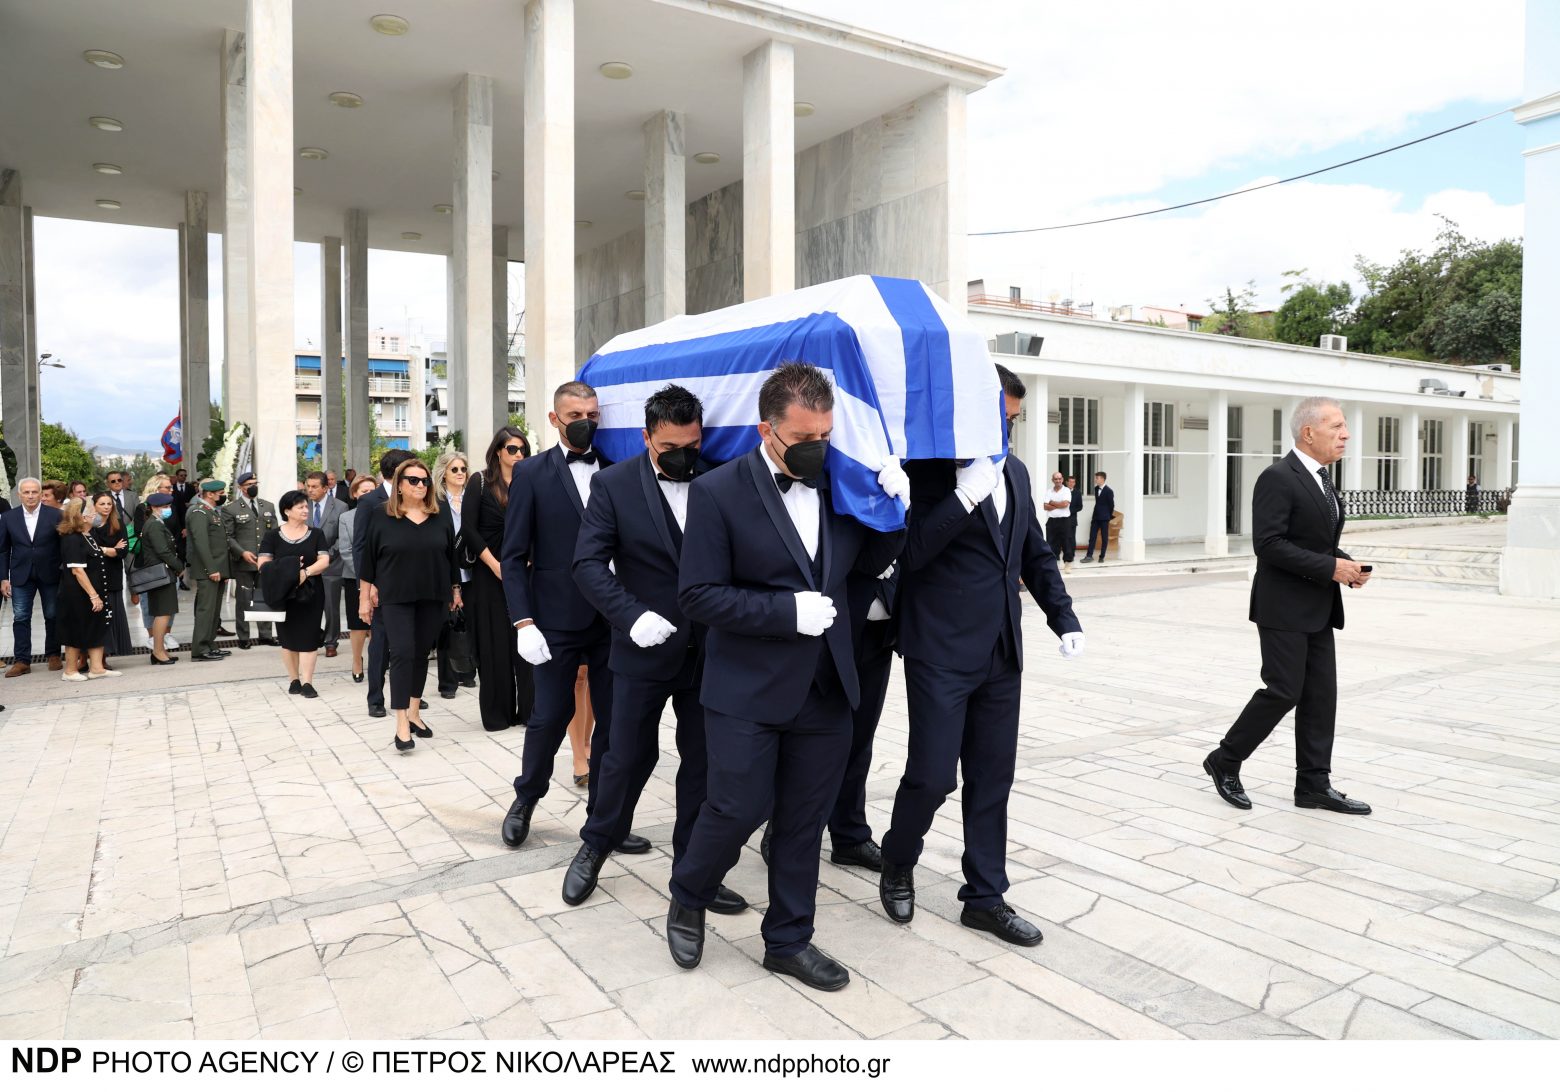 Τελευταίο αντίο στον Ζάχο Χατζηφωτίου - Ποιοι πήγαν στην κηδεία [Eικόνες]